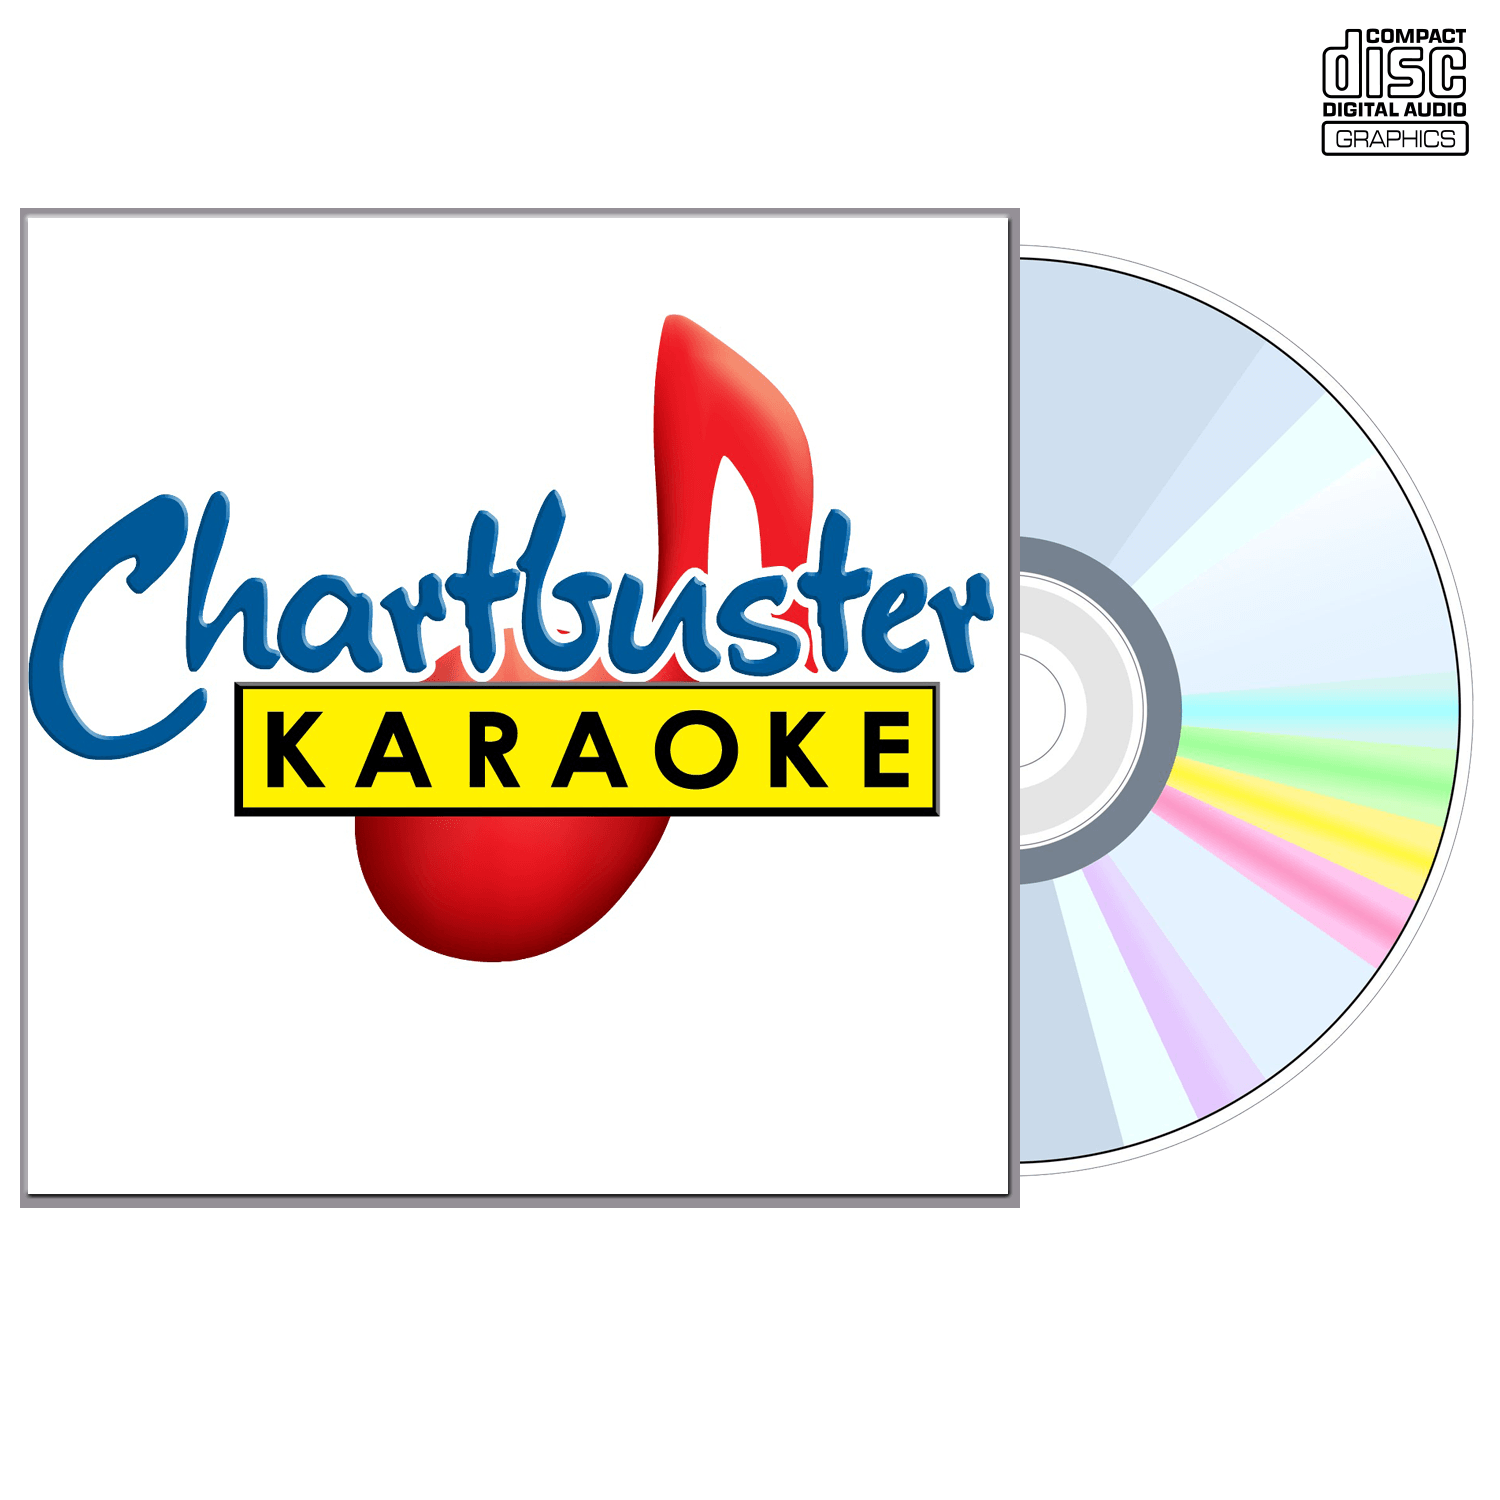 The Doors - CD+G - Chartbuster Karaoke - Karaoke Home Entertainment